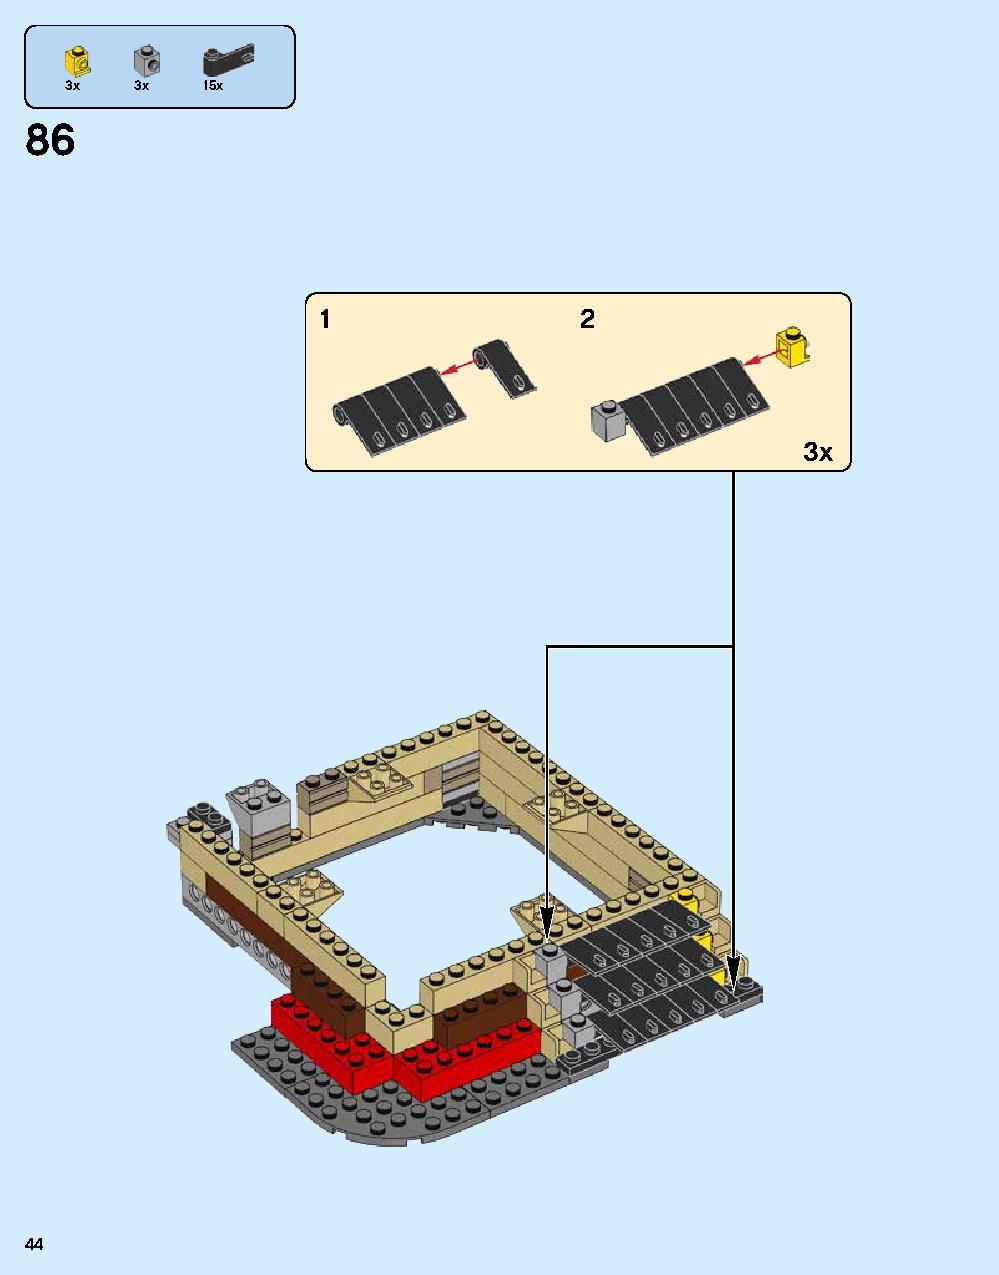 ニンジャゴー シティ 70620 レゴの商品情報 レゴの説明書・組立方法 44 page